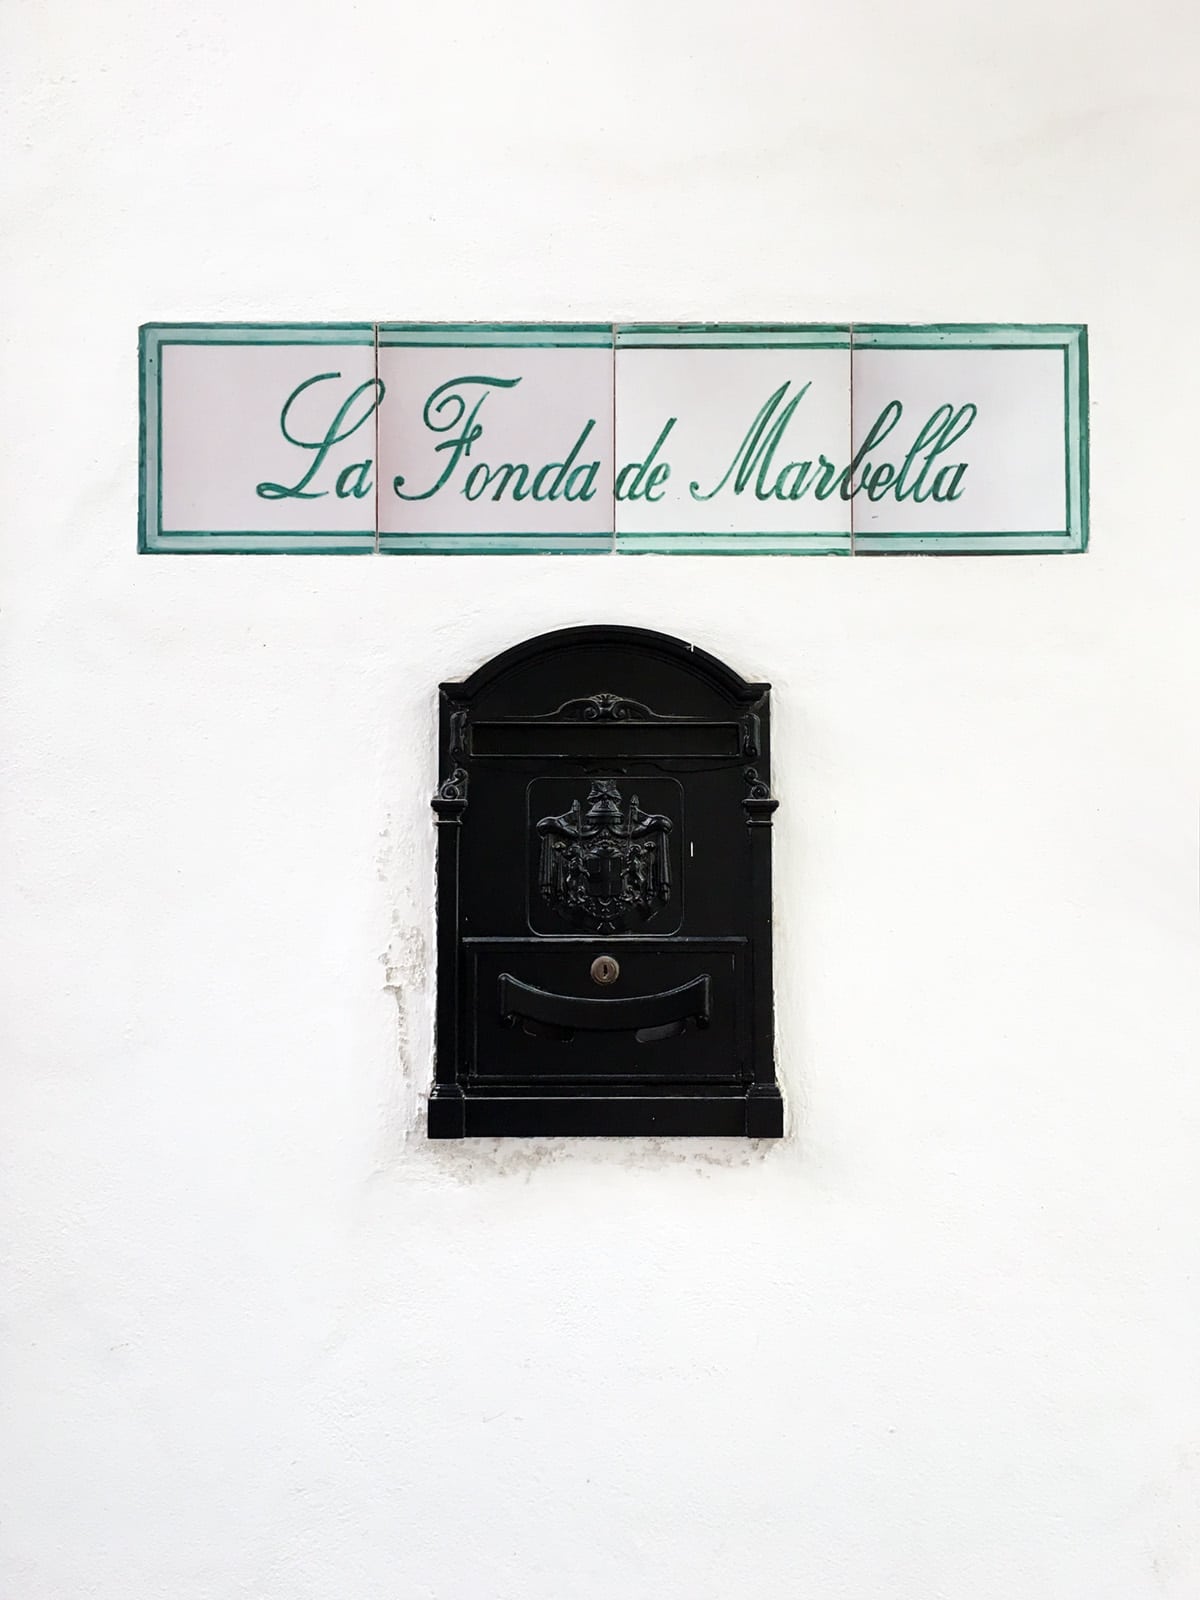 post office box in marbella spain | via coco kelley